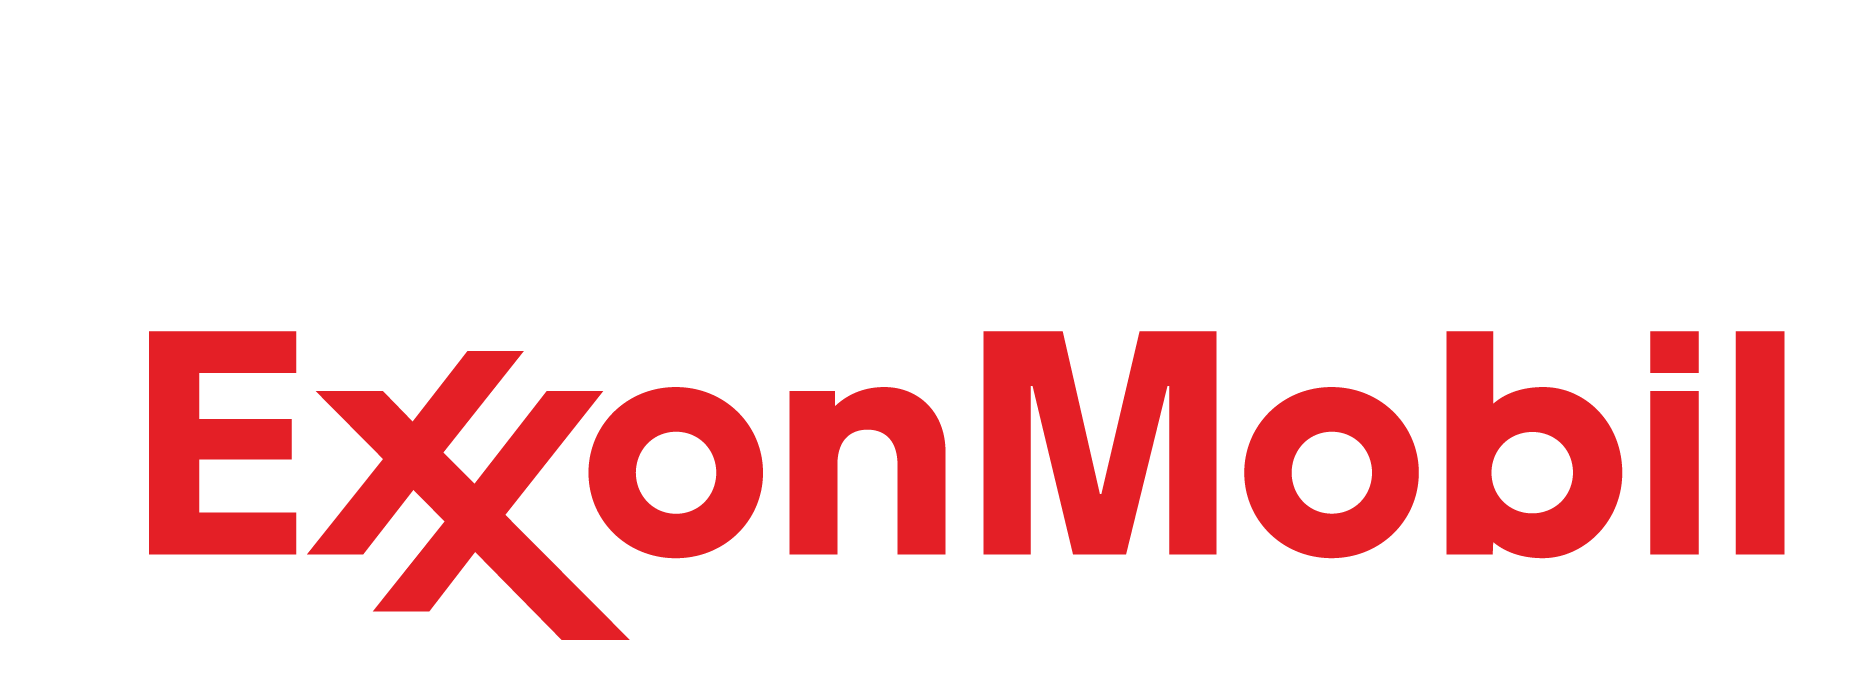 ExxonMobil Logo PNG HD Quality